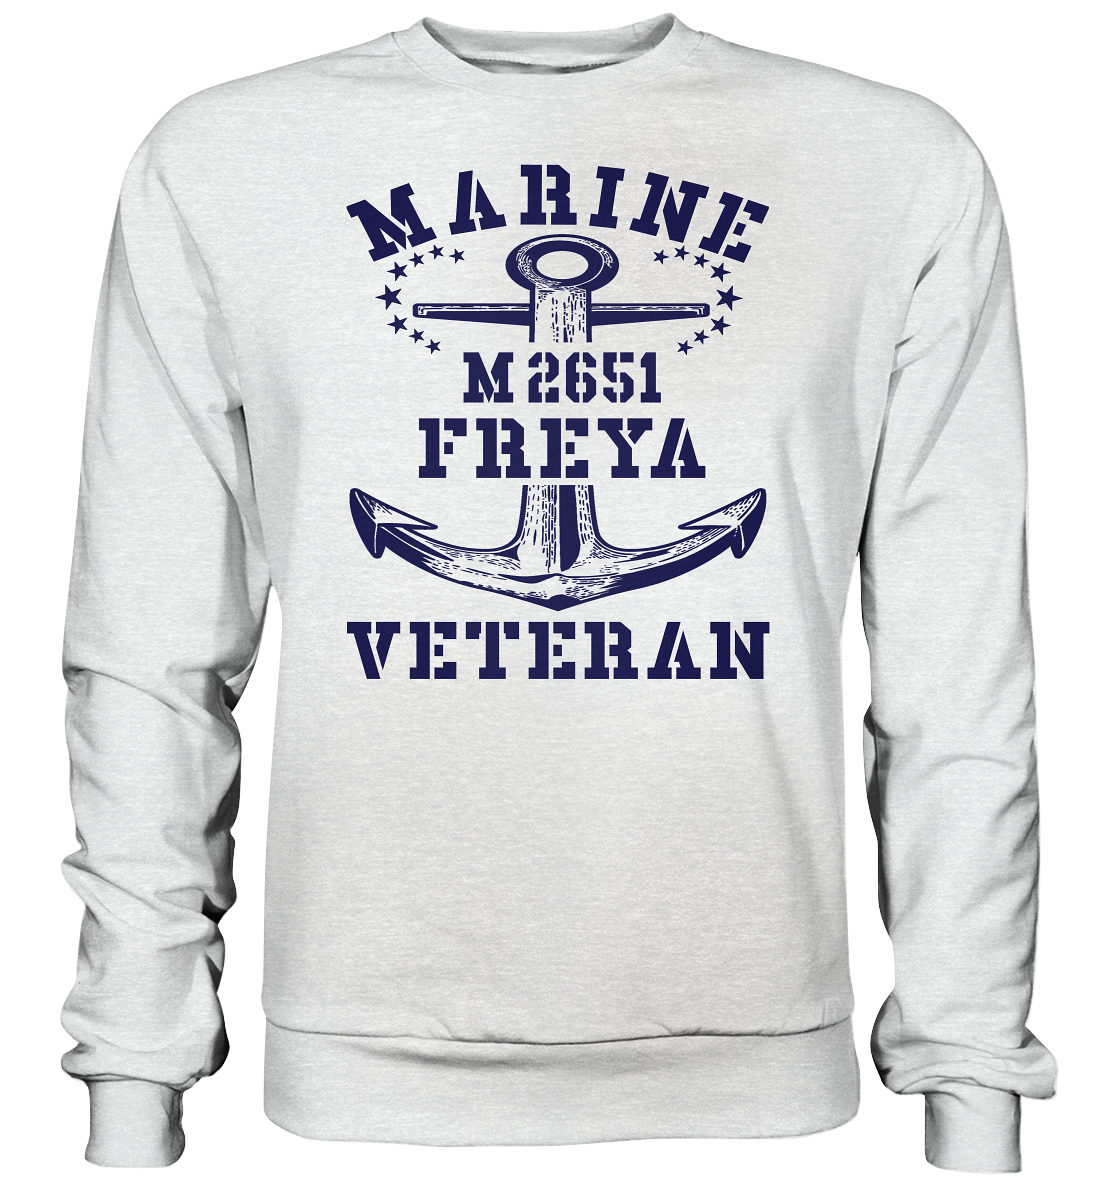 BiMi M2651 FREYA Marine Veteran - Premium Sweatshirt